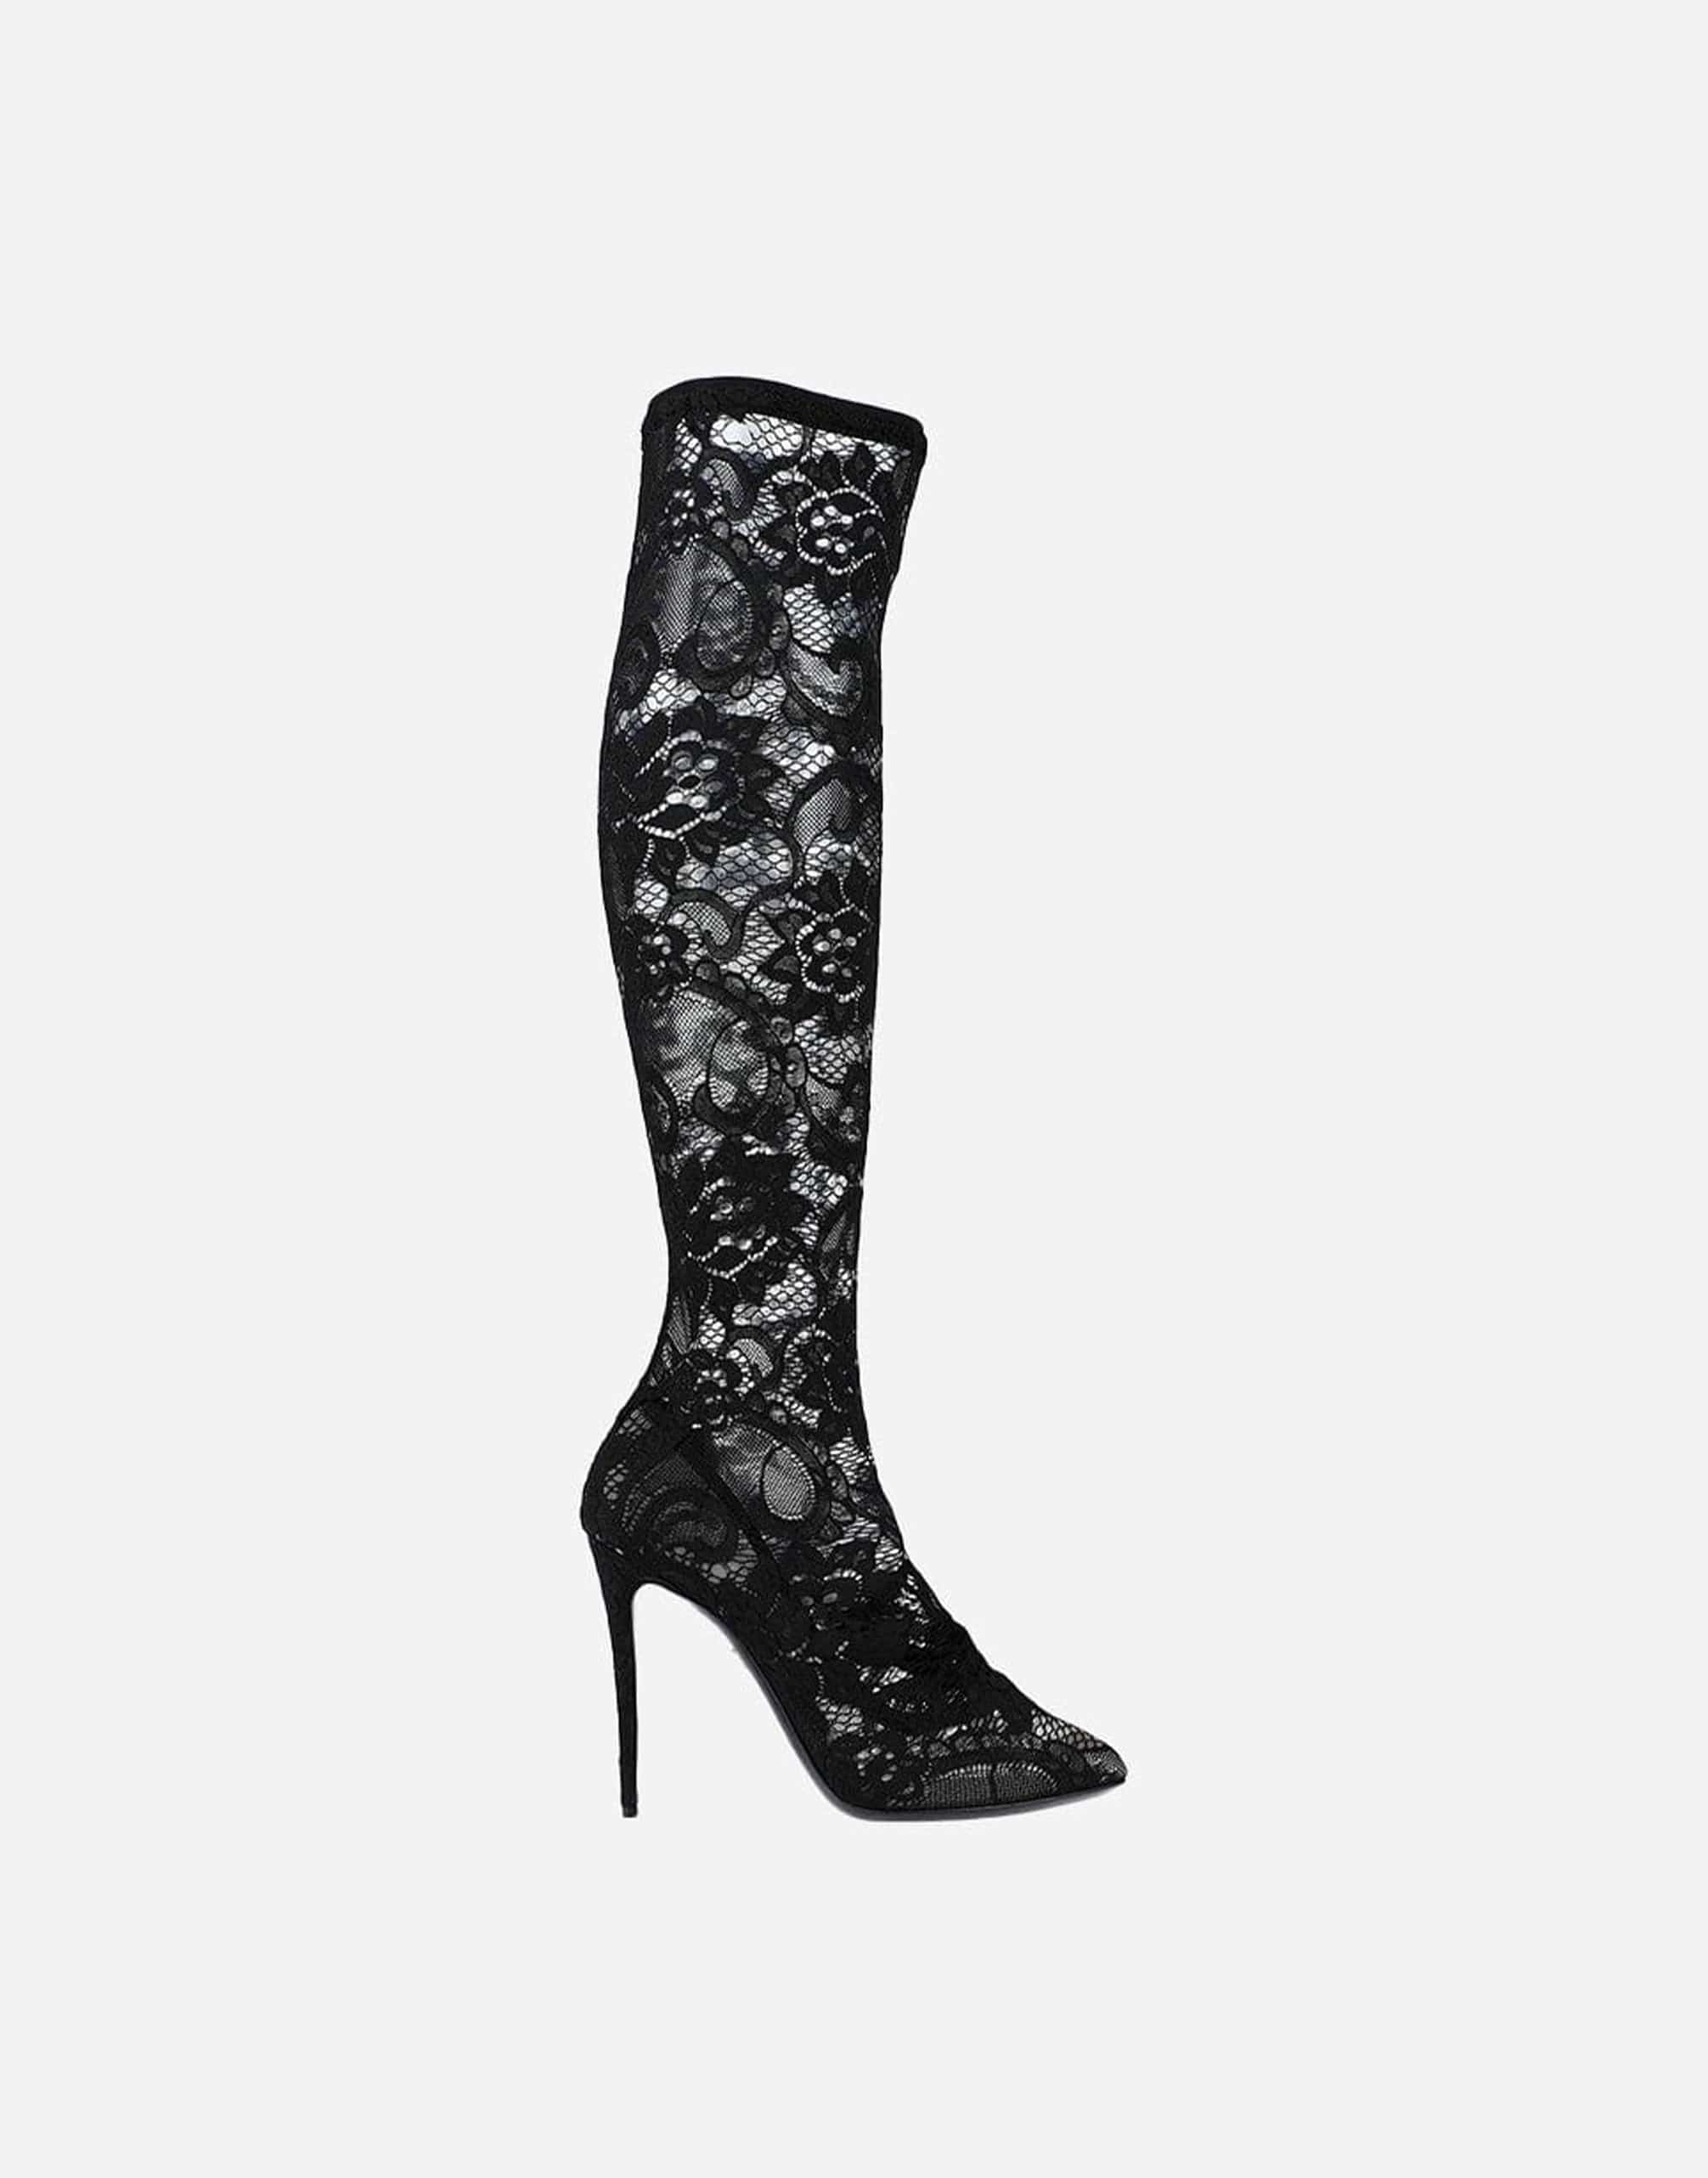 Dolce & Gabbana Taormina Lace High Boots